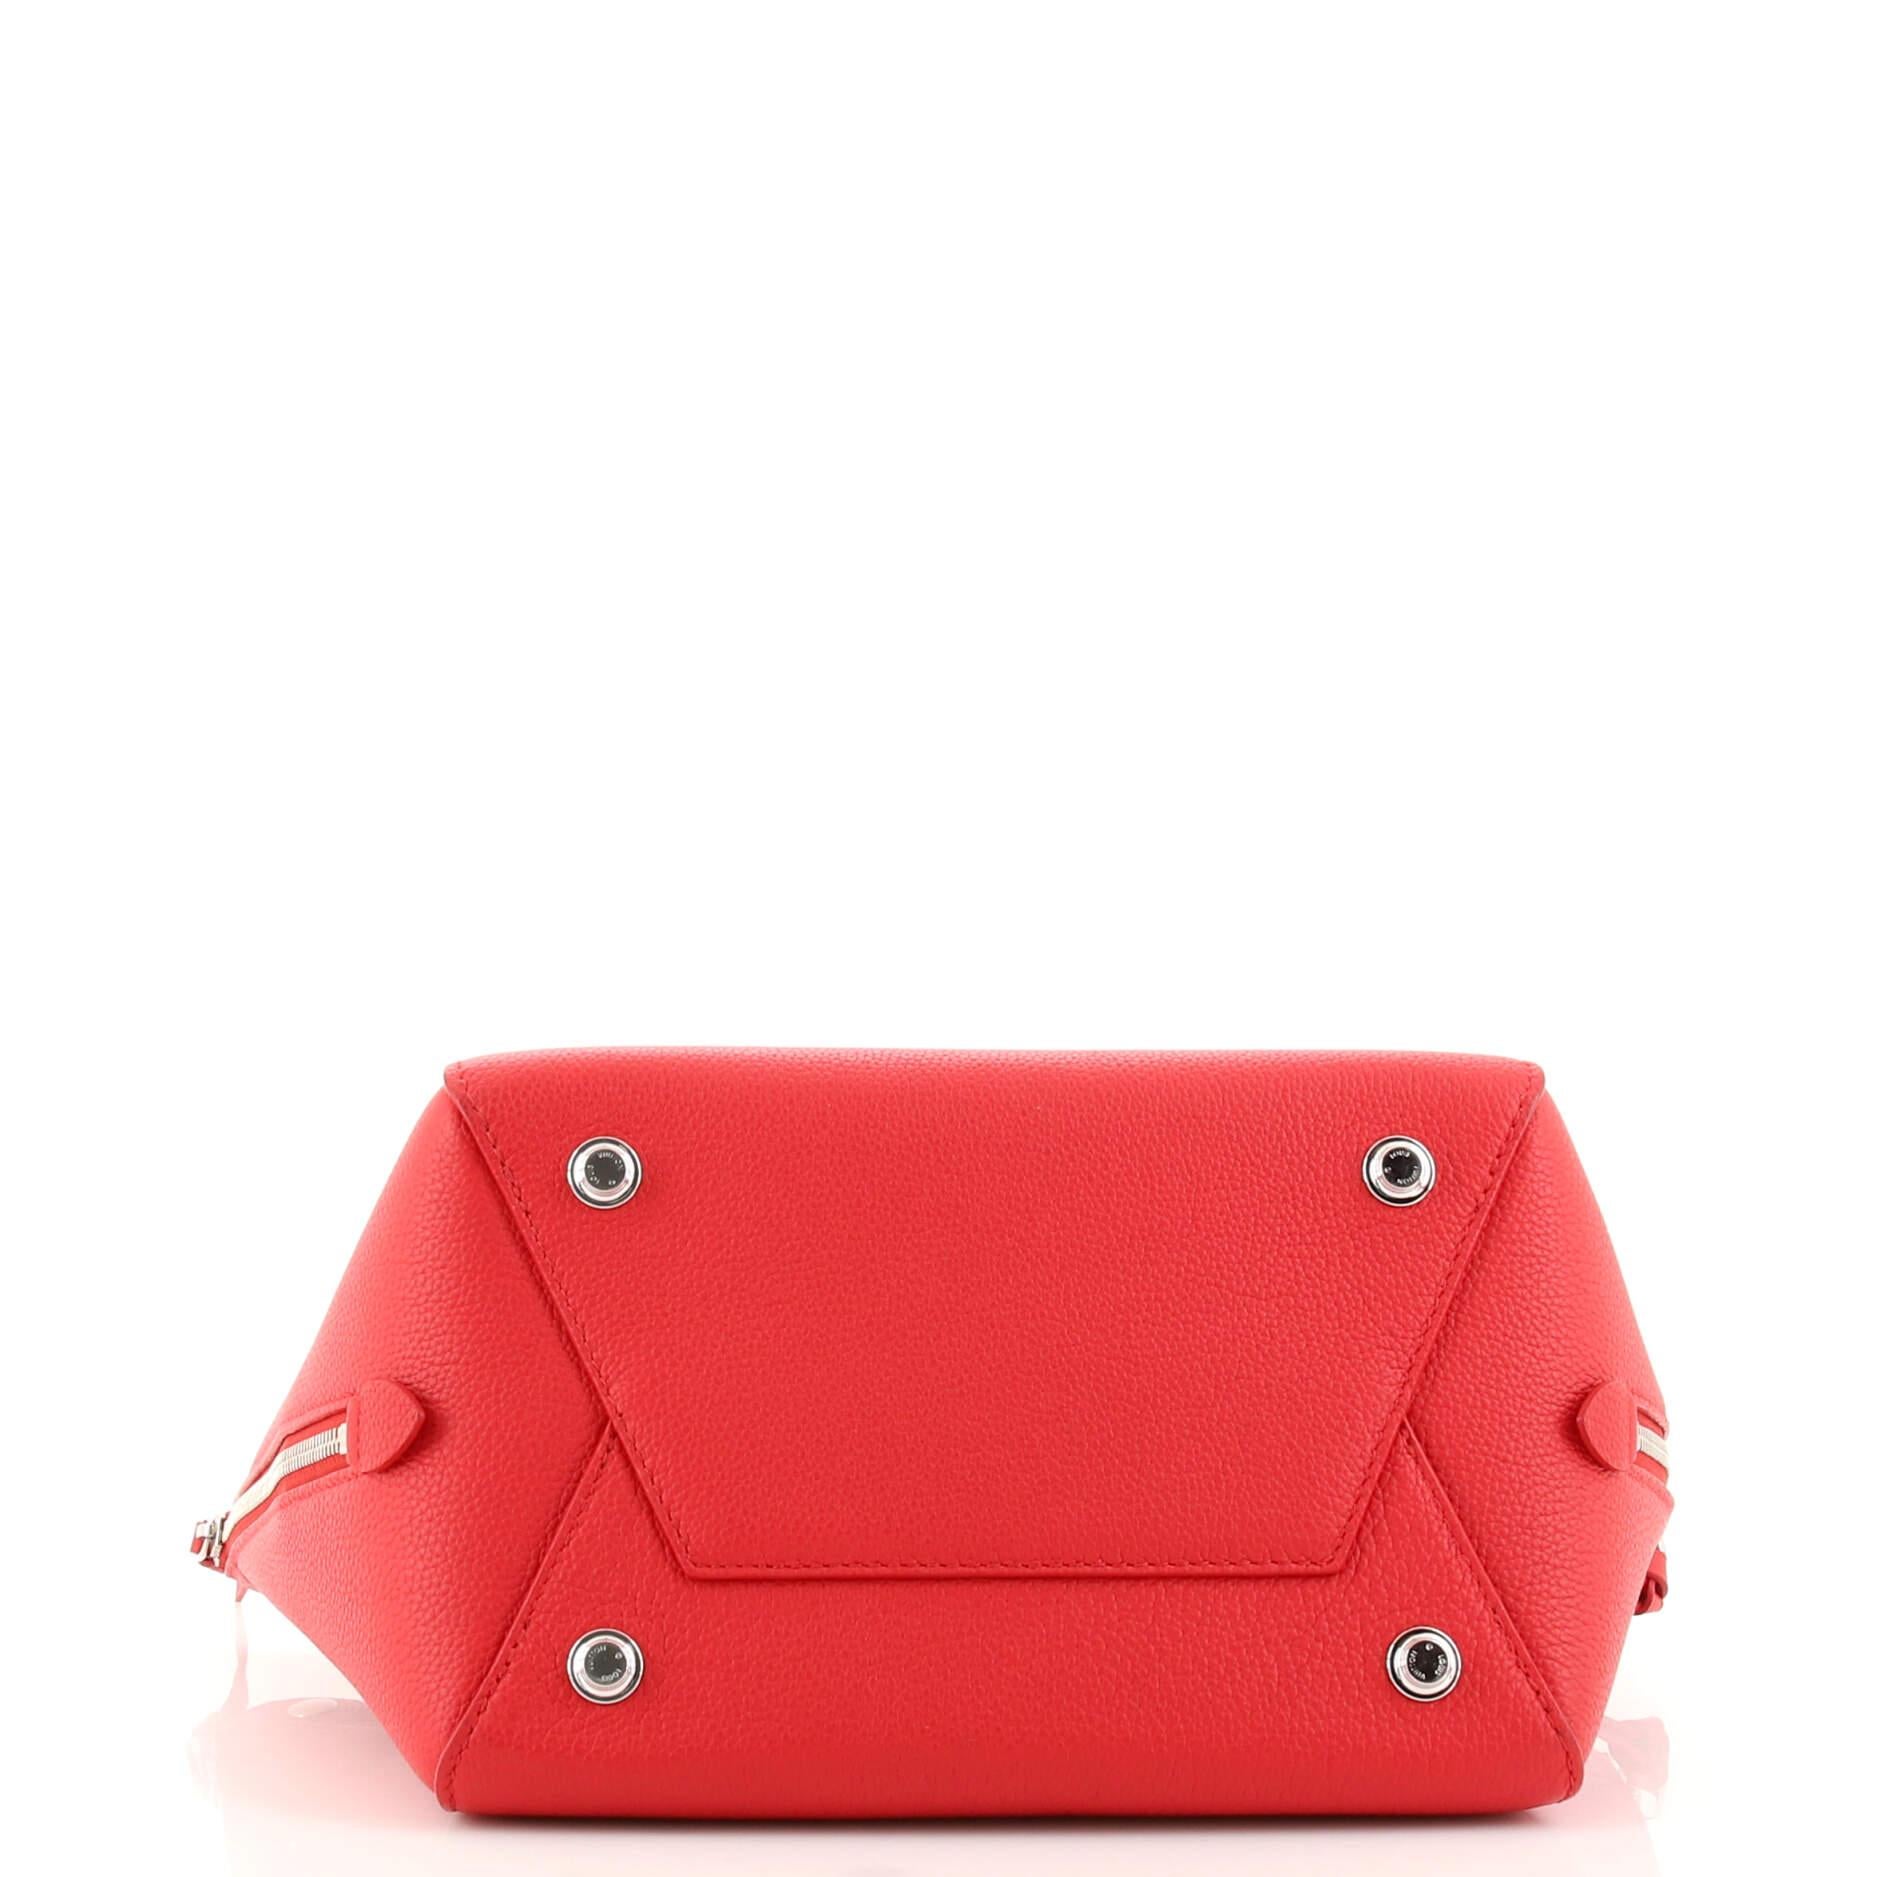 Red Louis Vuitton Freedom Handbag Calfskin